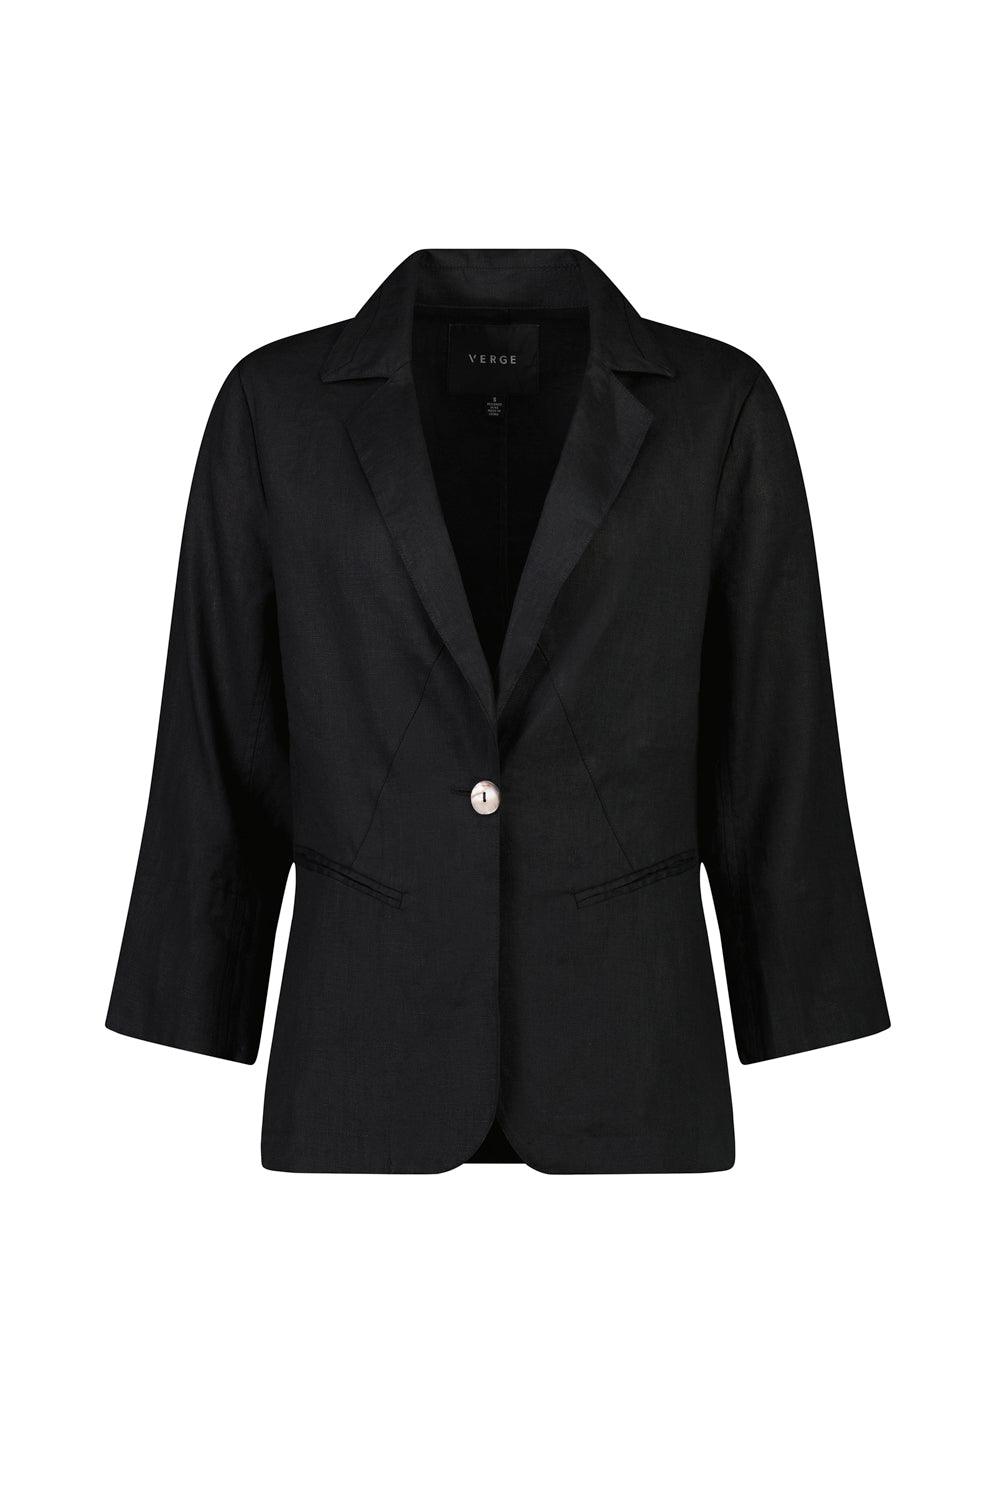 Absolute Linen Blazer - Black - Jacket VERGE